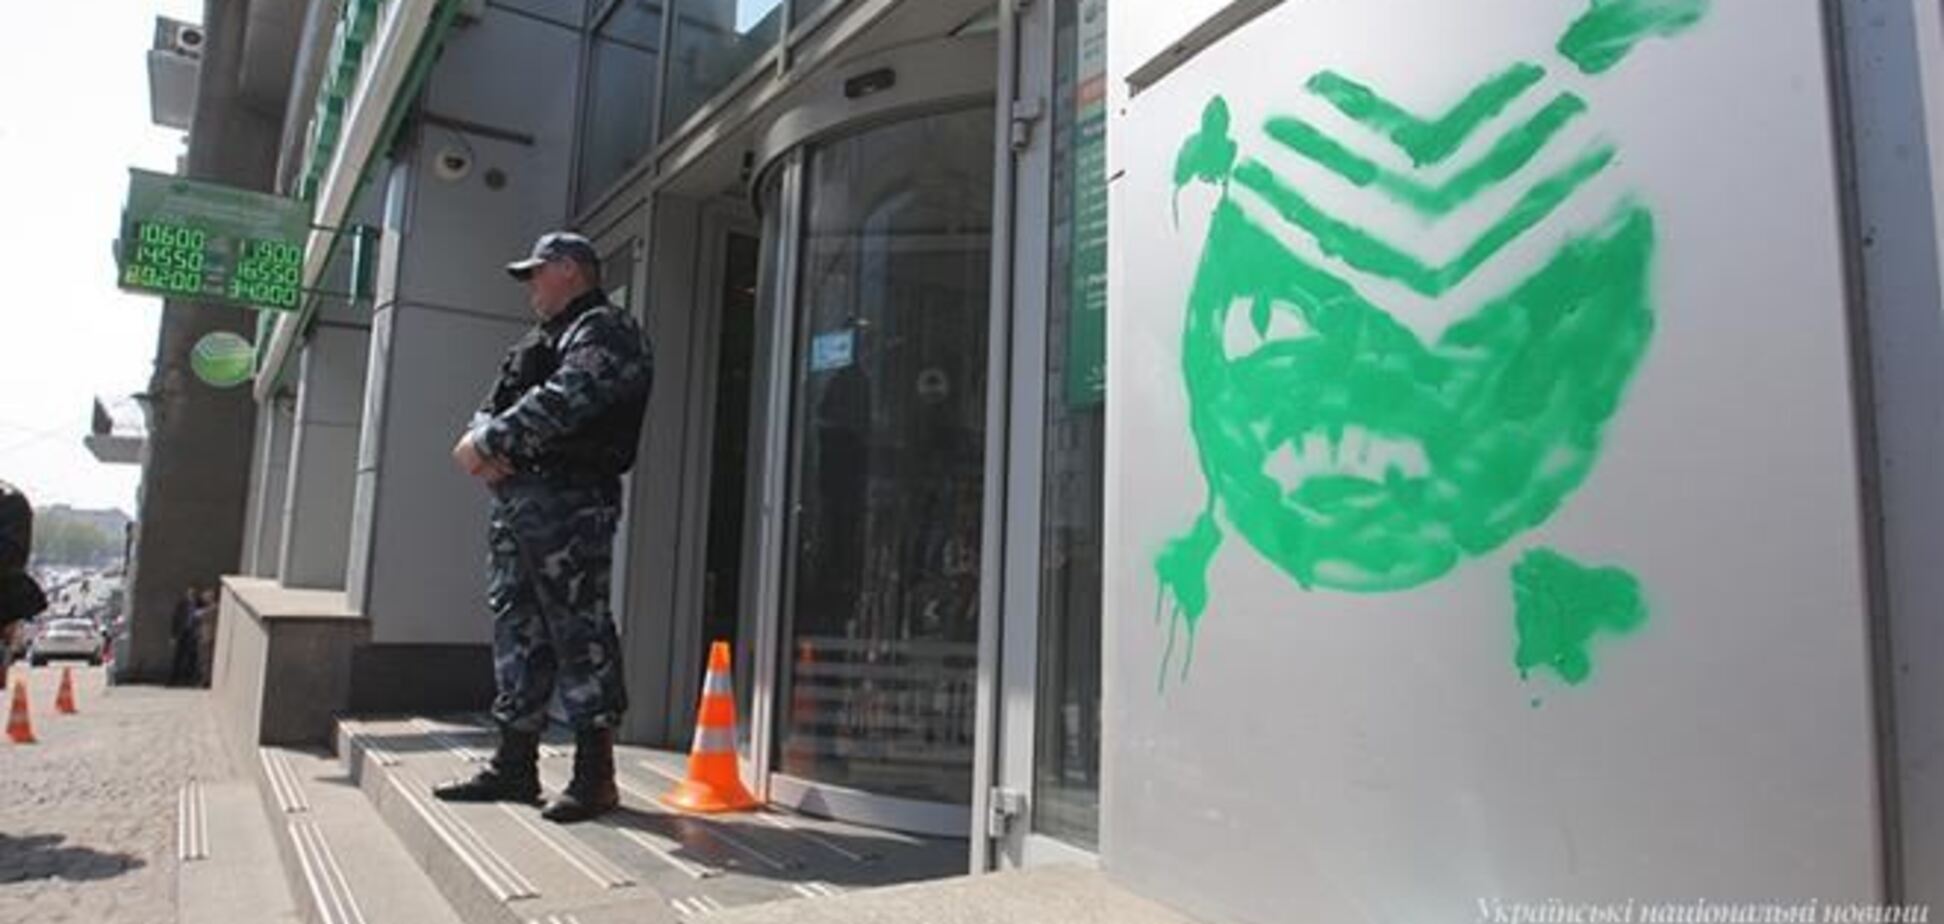 Офис 'Сбербанка России' в Киеве обрисовали 'зелеными человечками'